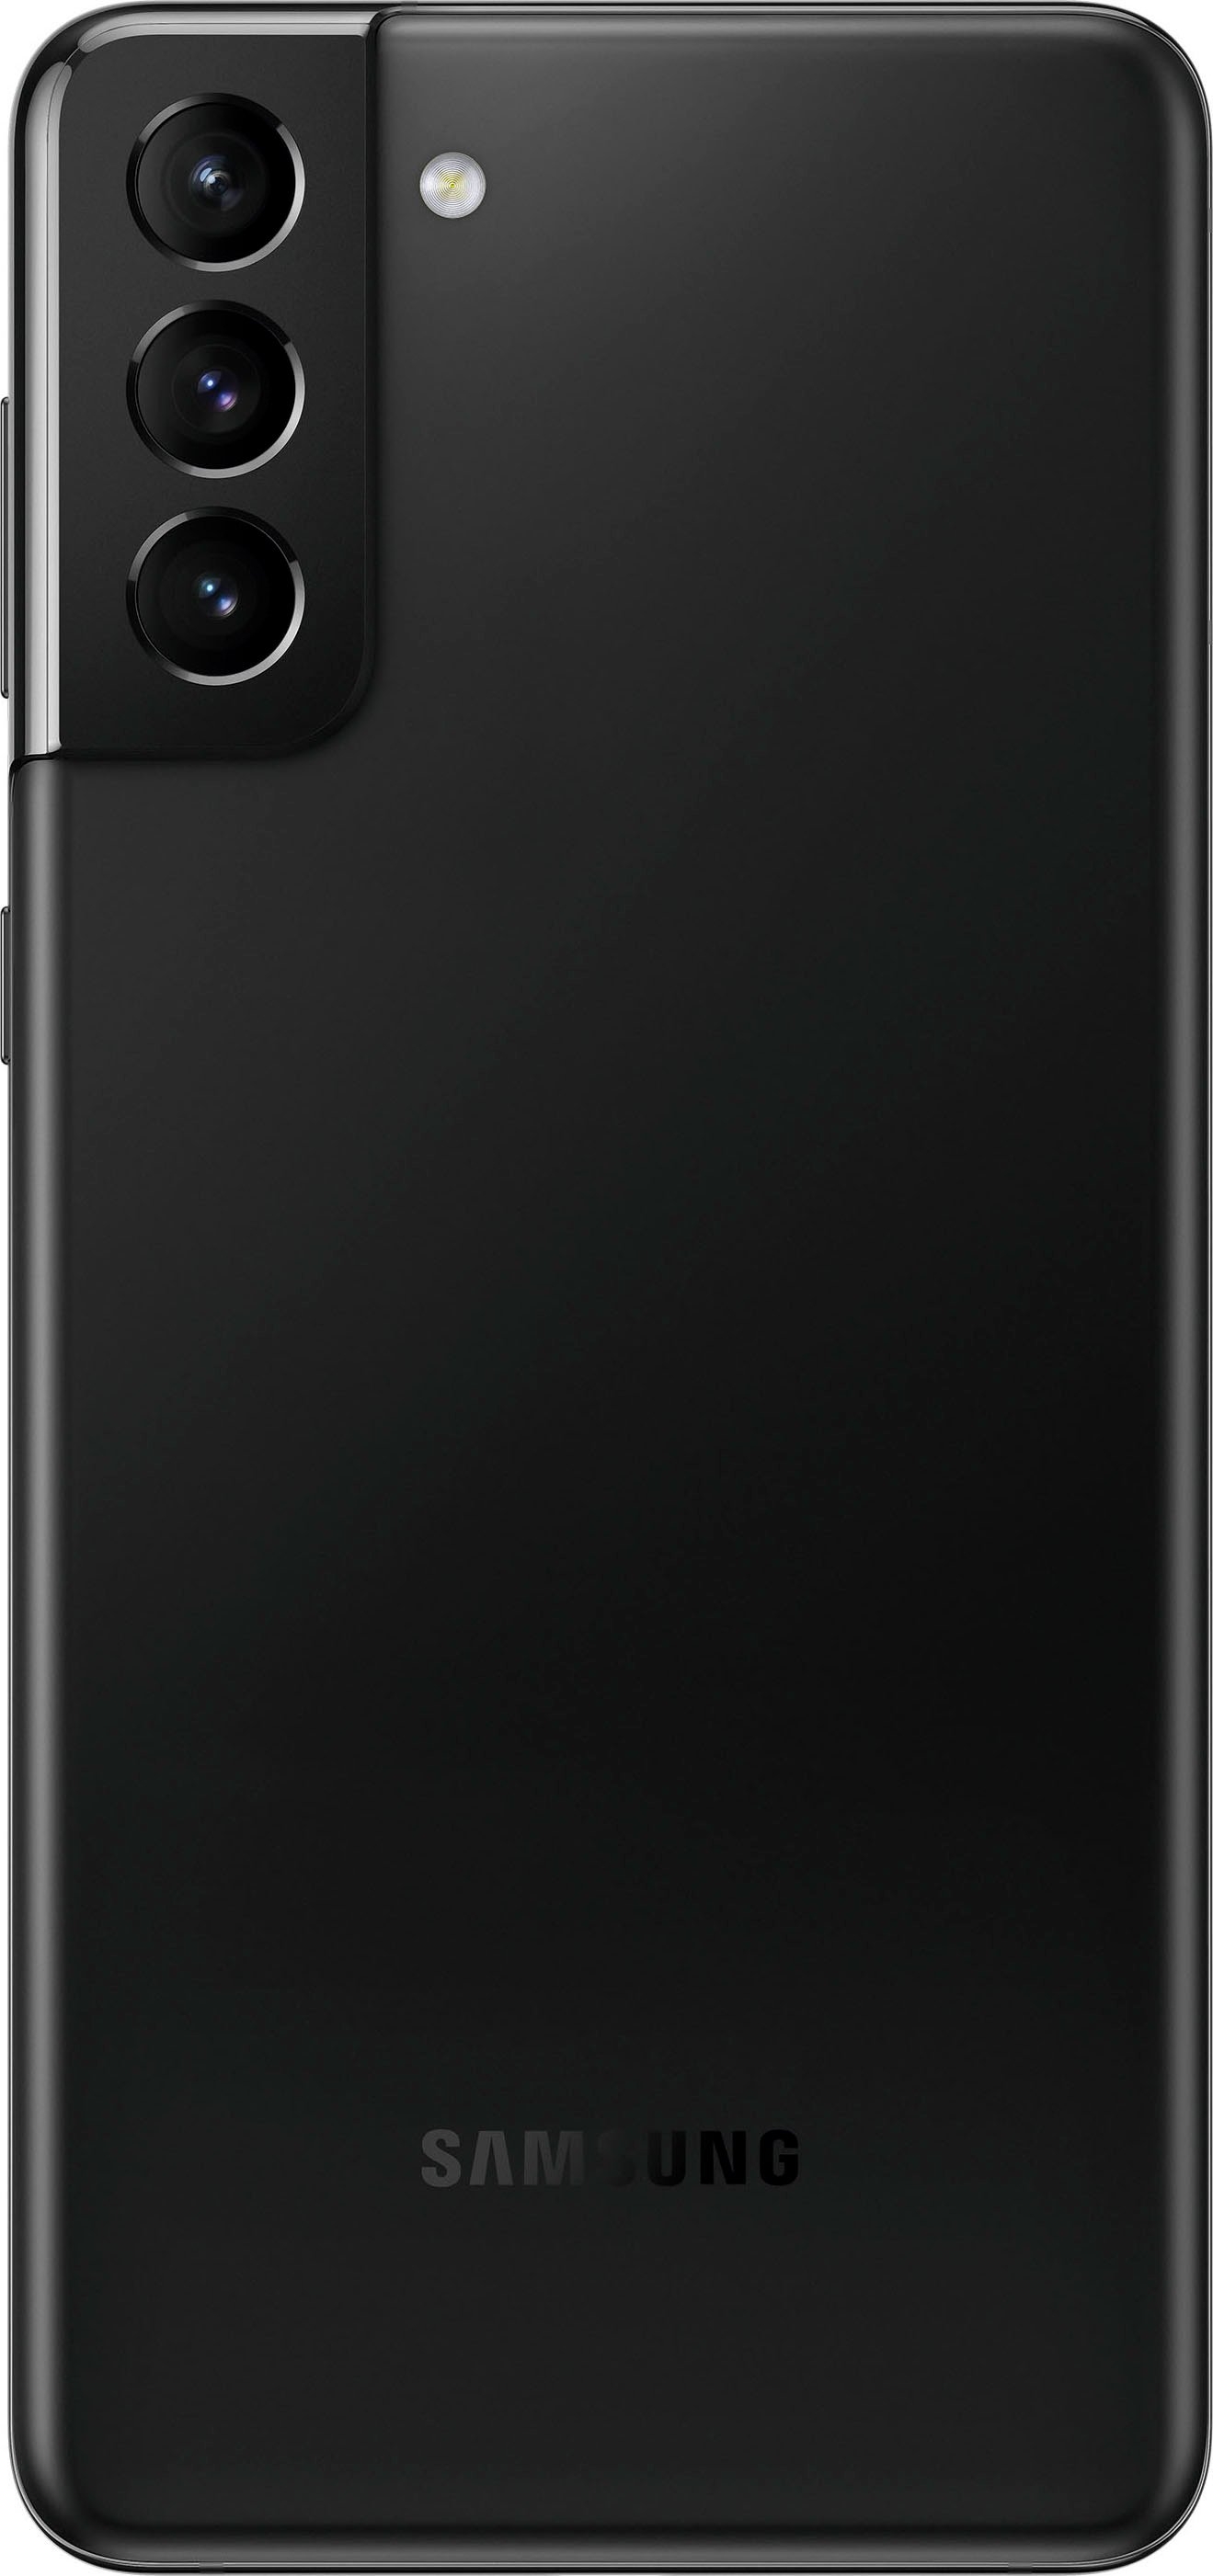 Avondeten heks bezoeker Samsung Smartphone Galaxy S21+ 5G 3 jaar garantie nu online kopen | OTTO